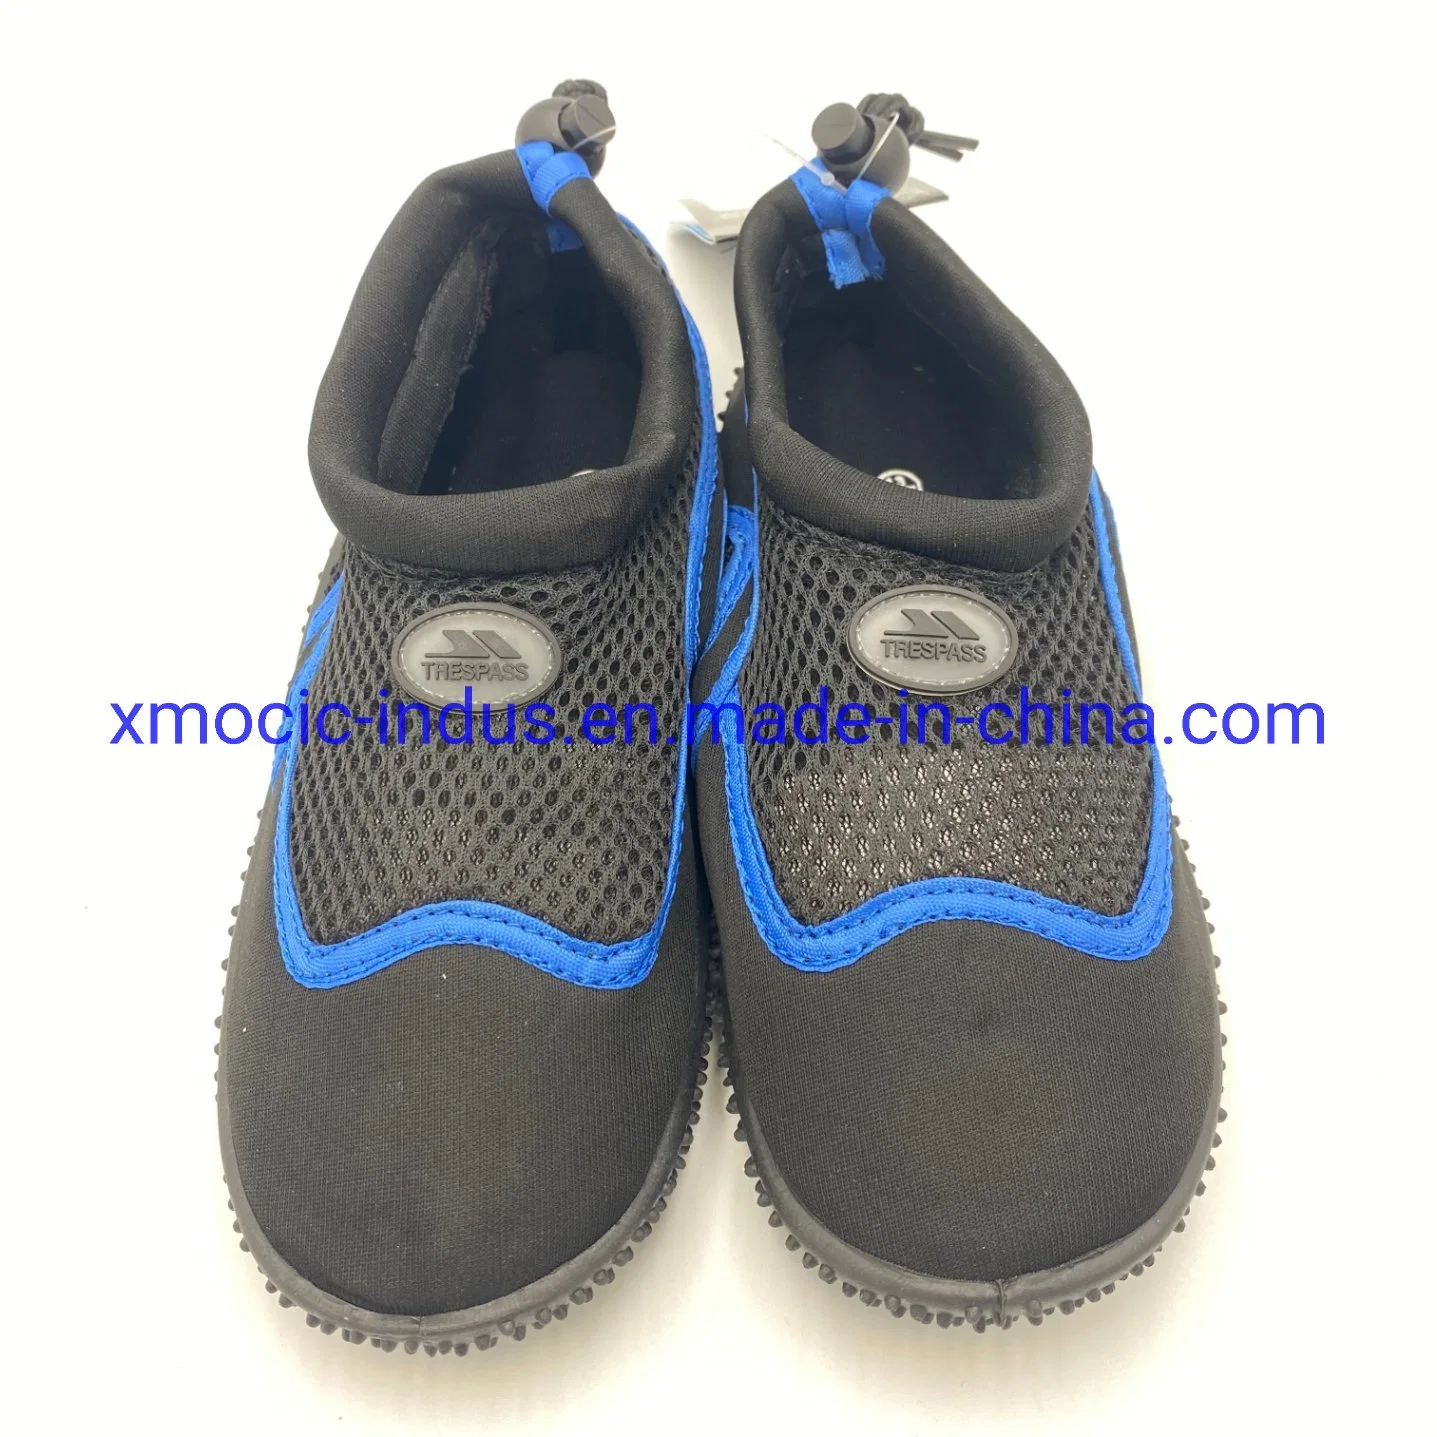 Новая специальная обувь для плавания Обувь для водных аттрав дышащая мягкая обувь для купания вне помещений Пляжная нескользящая Фитнес Дайвинг Снейкер для серфинга